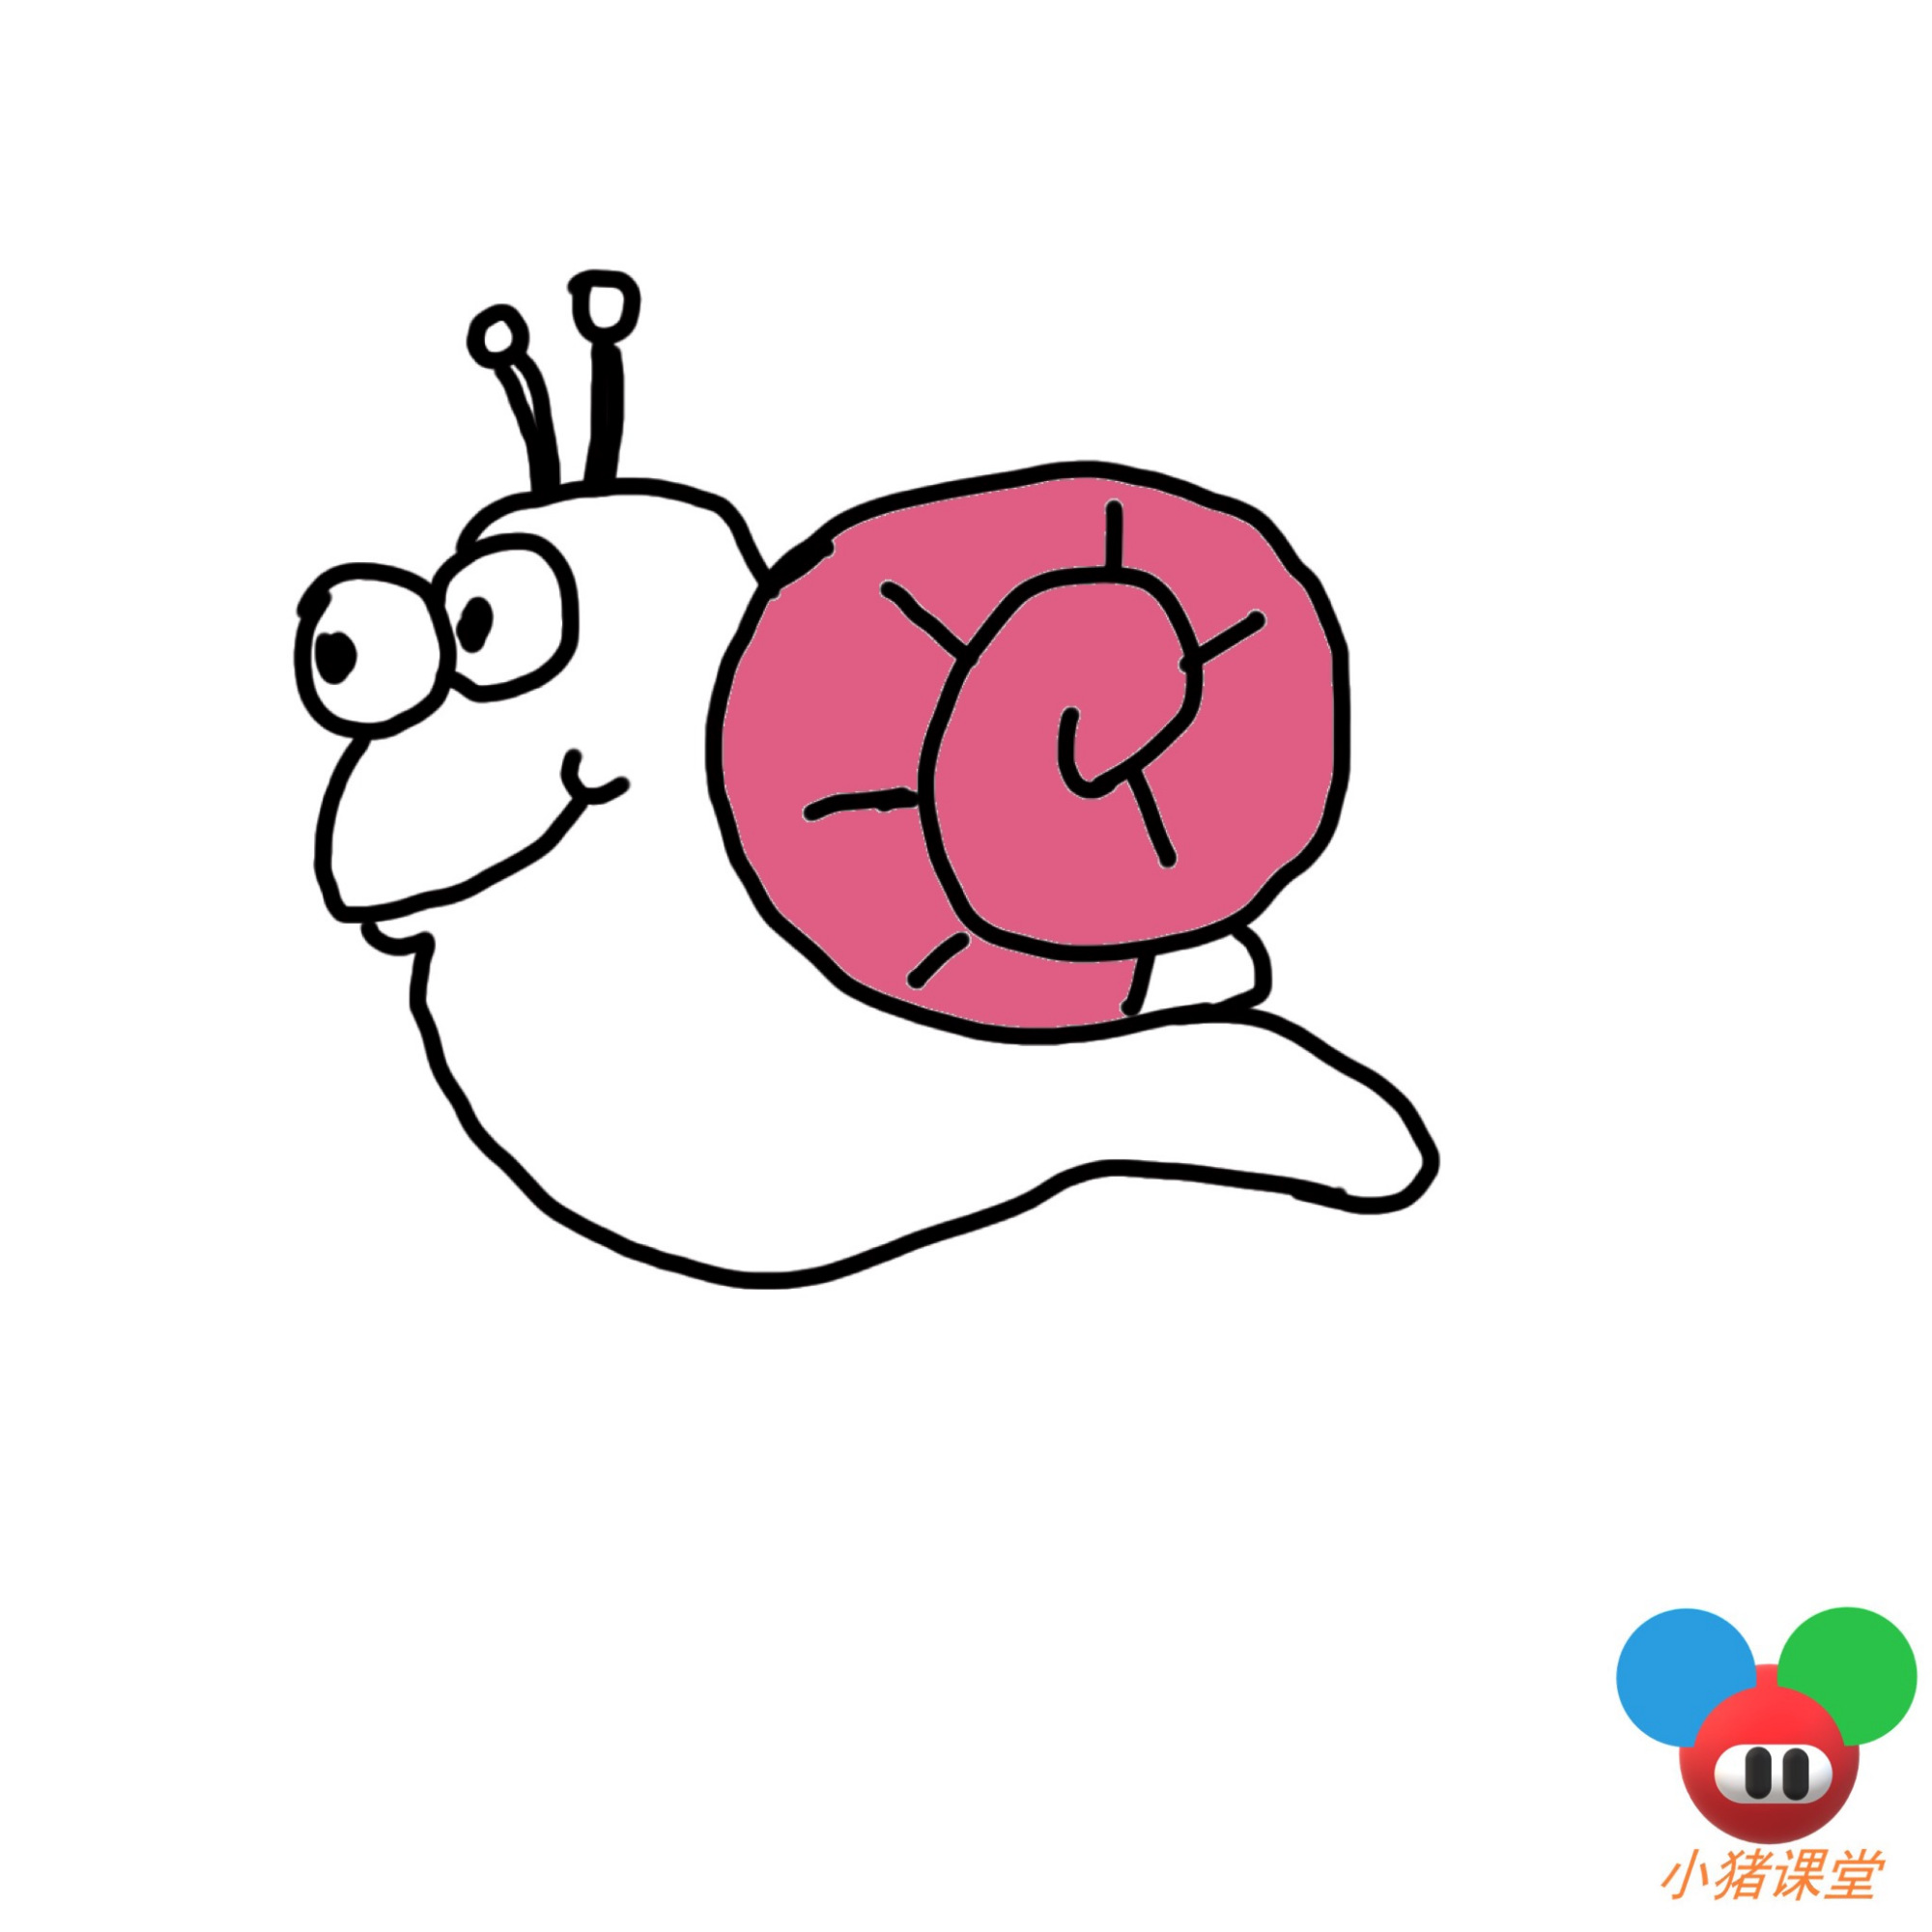 简笔画步骤图教学:不知道怎么画可爱的小蜗牛?6步教你轻松搞定